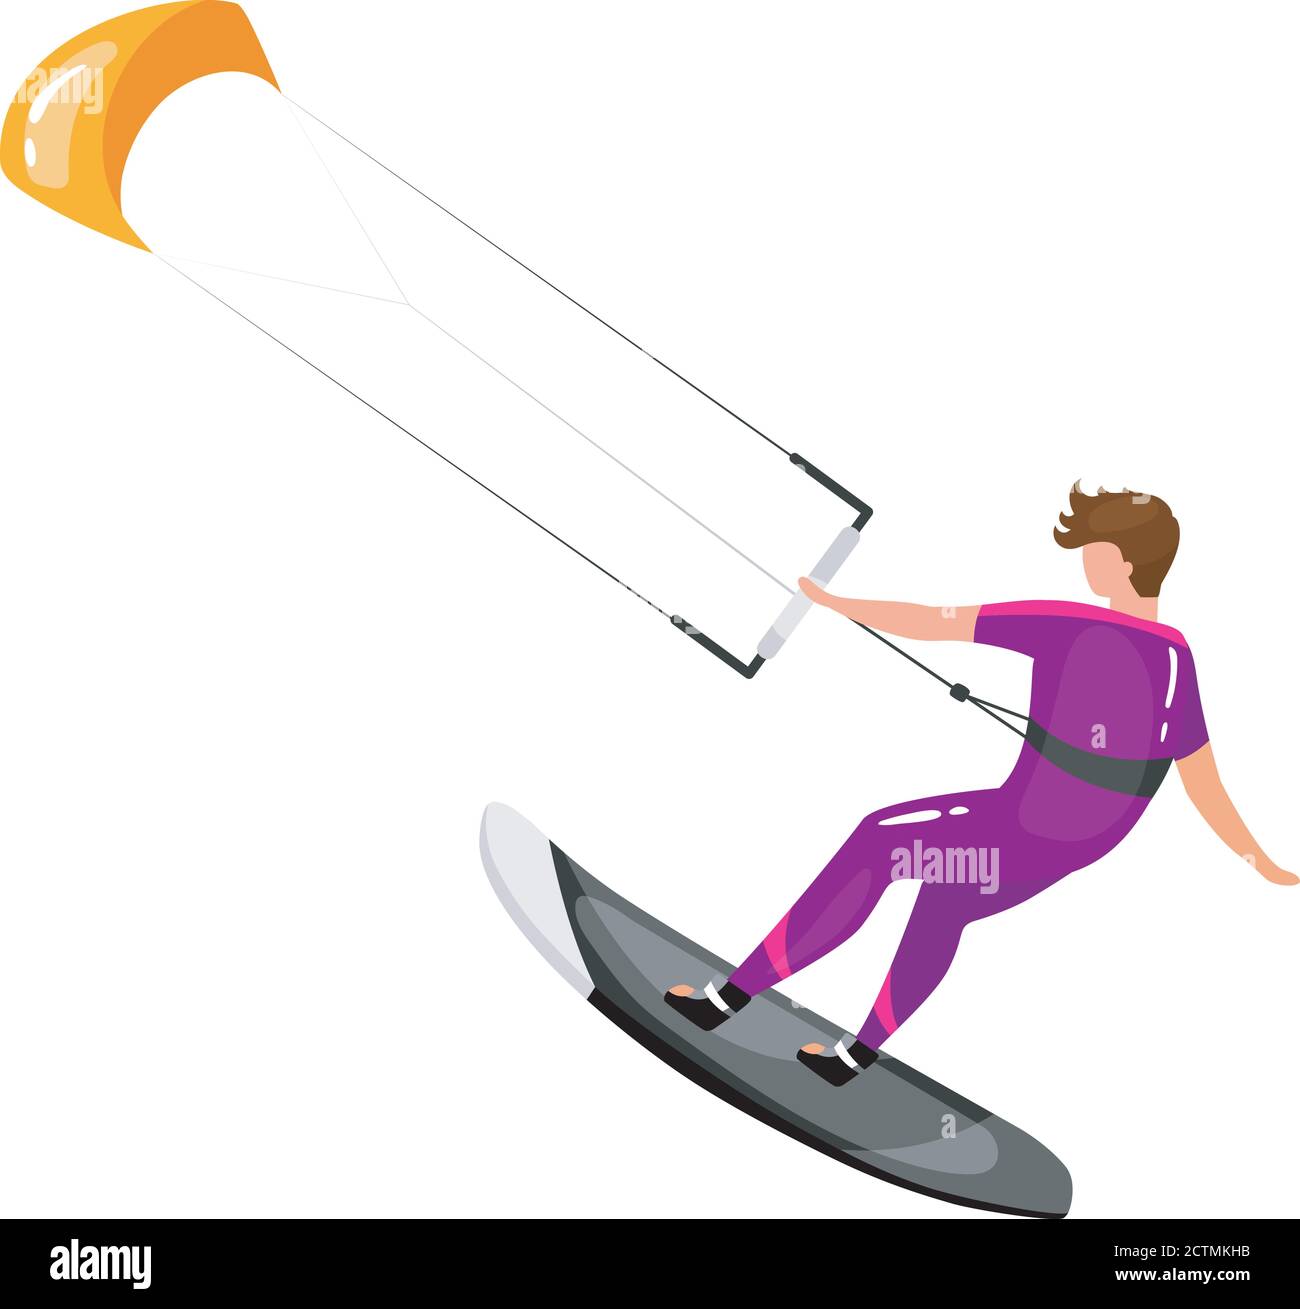 Illustration du vecteur plat de kitesurf Illustration de Vecteur